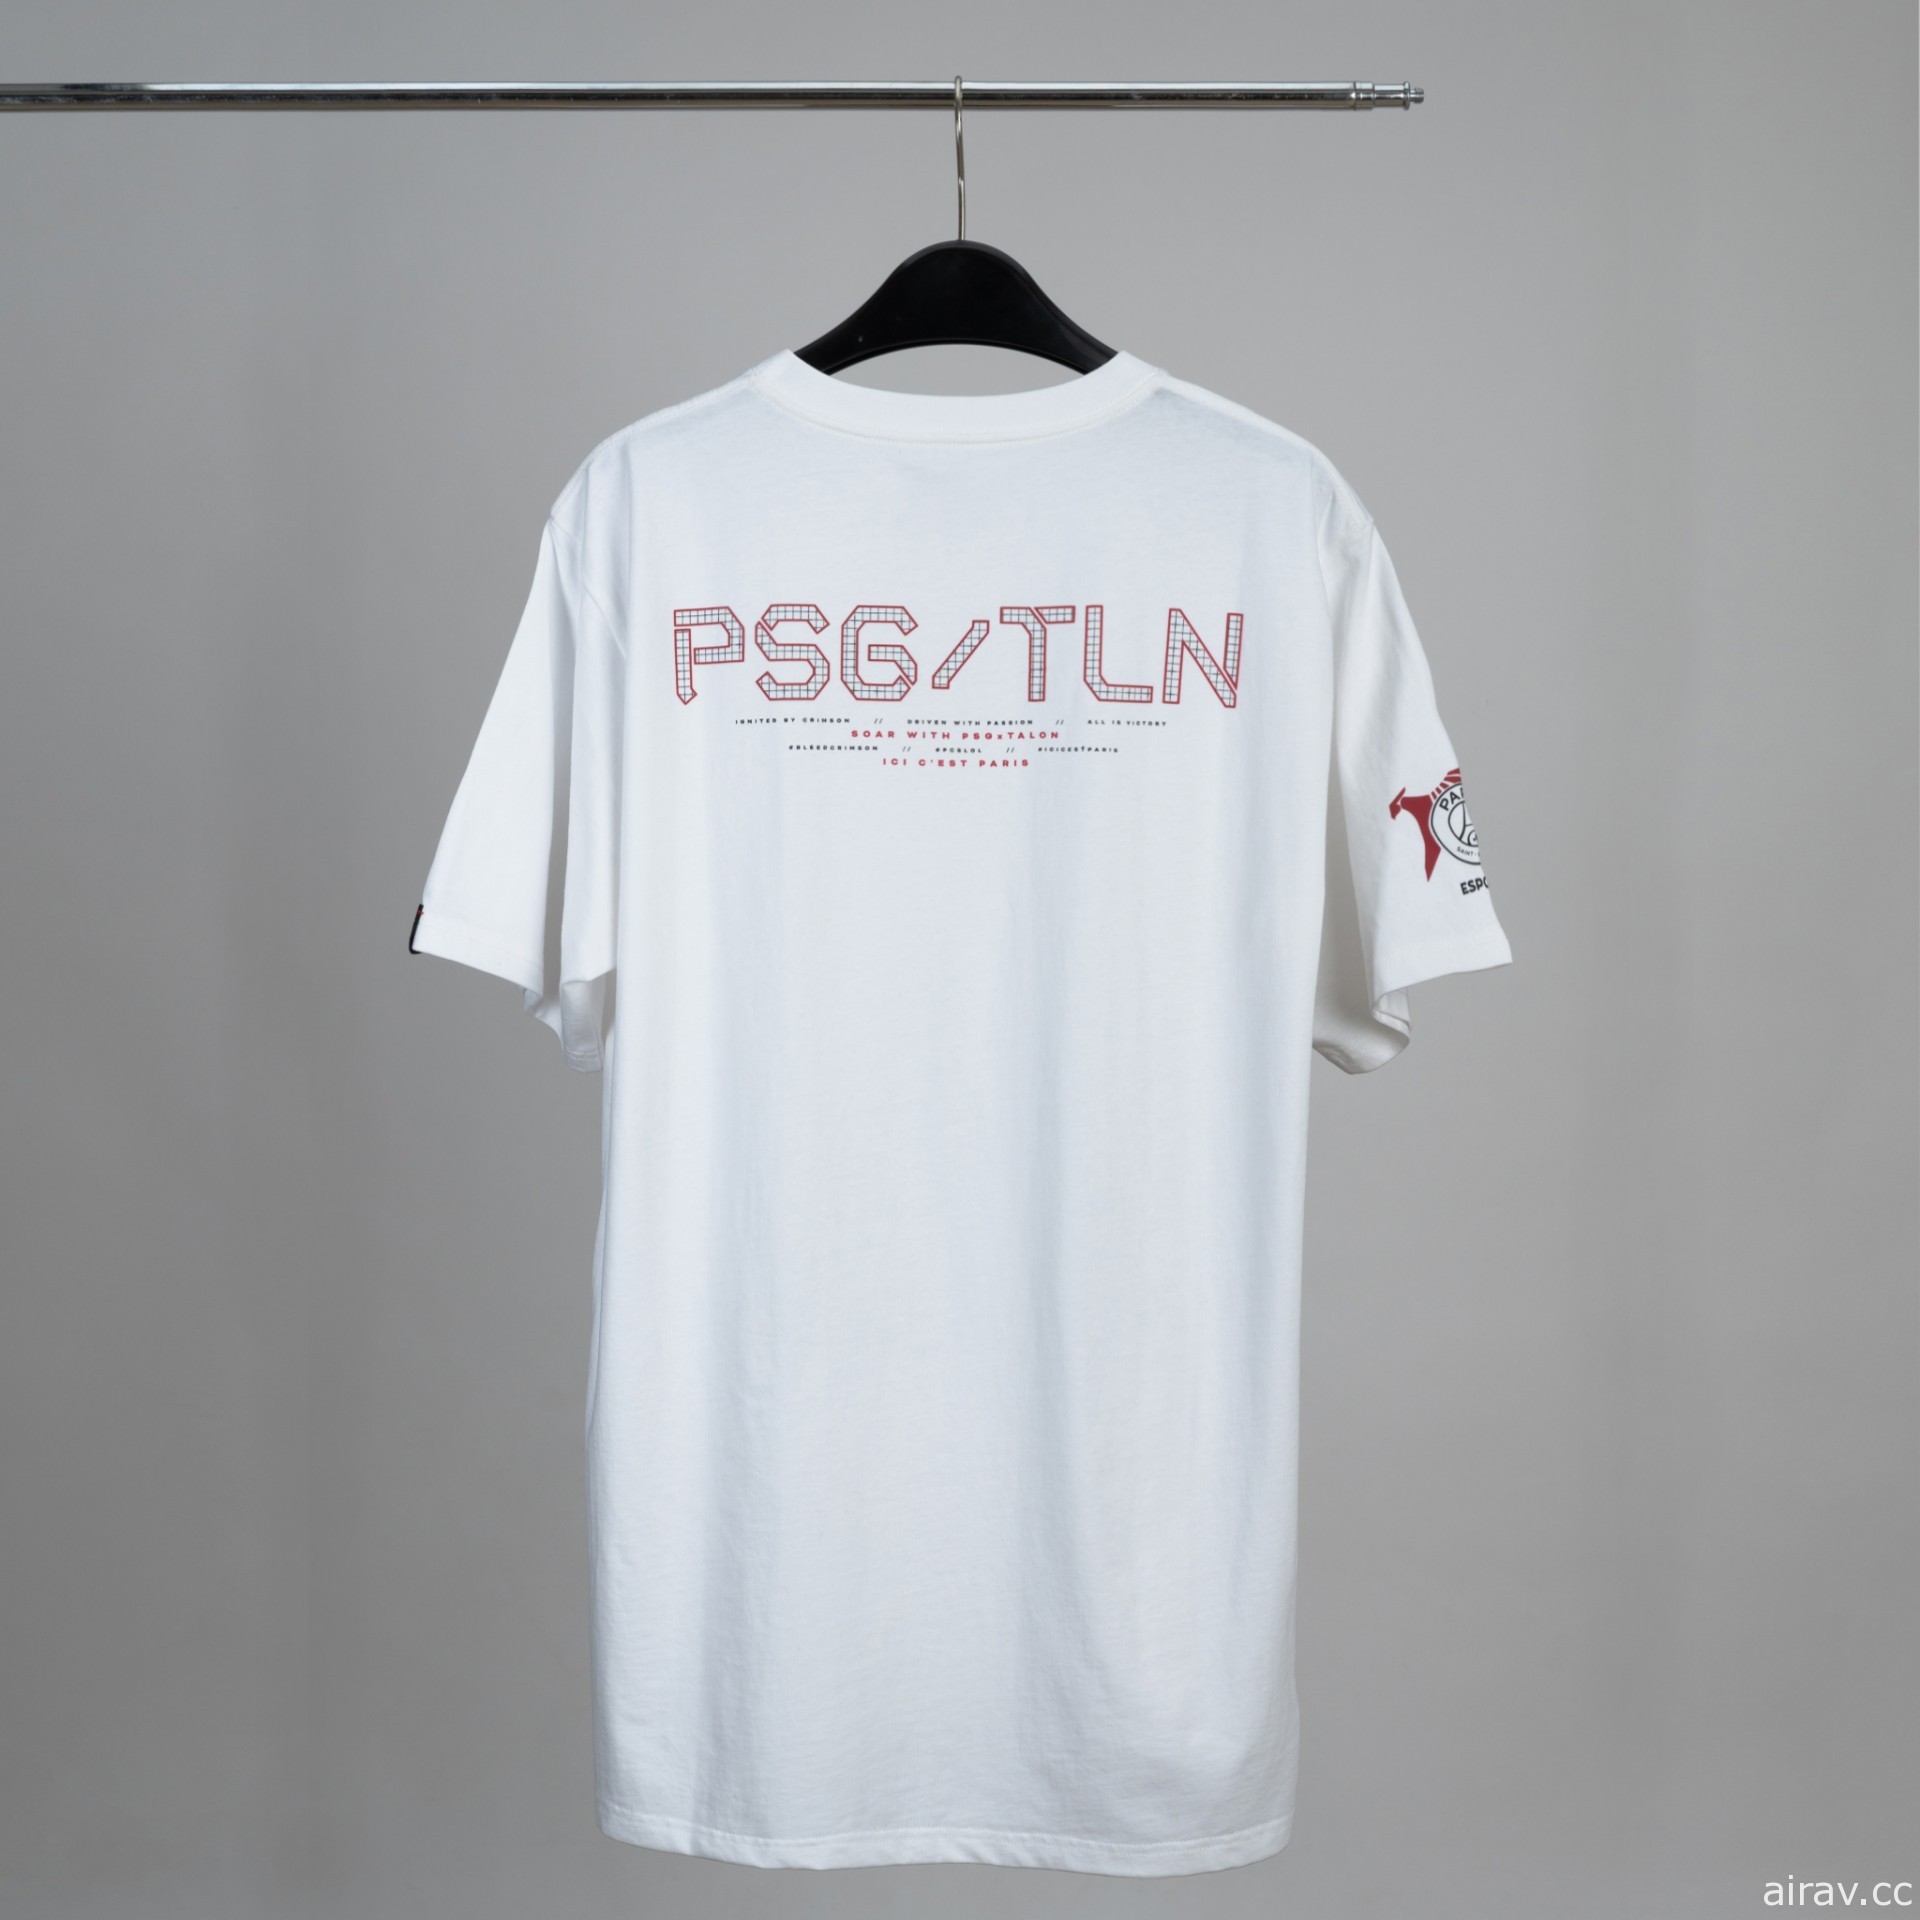 紀念《英雄聯盟》PSG Talon 職業戰隊前進 MSI　三款限量 T-shirt 明日開賣